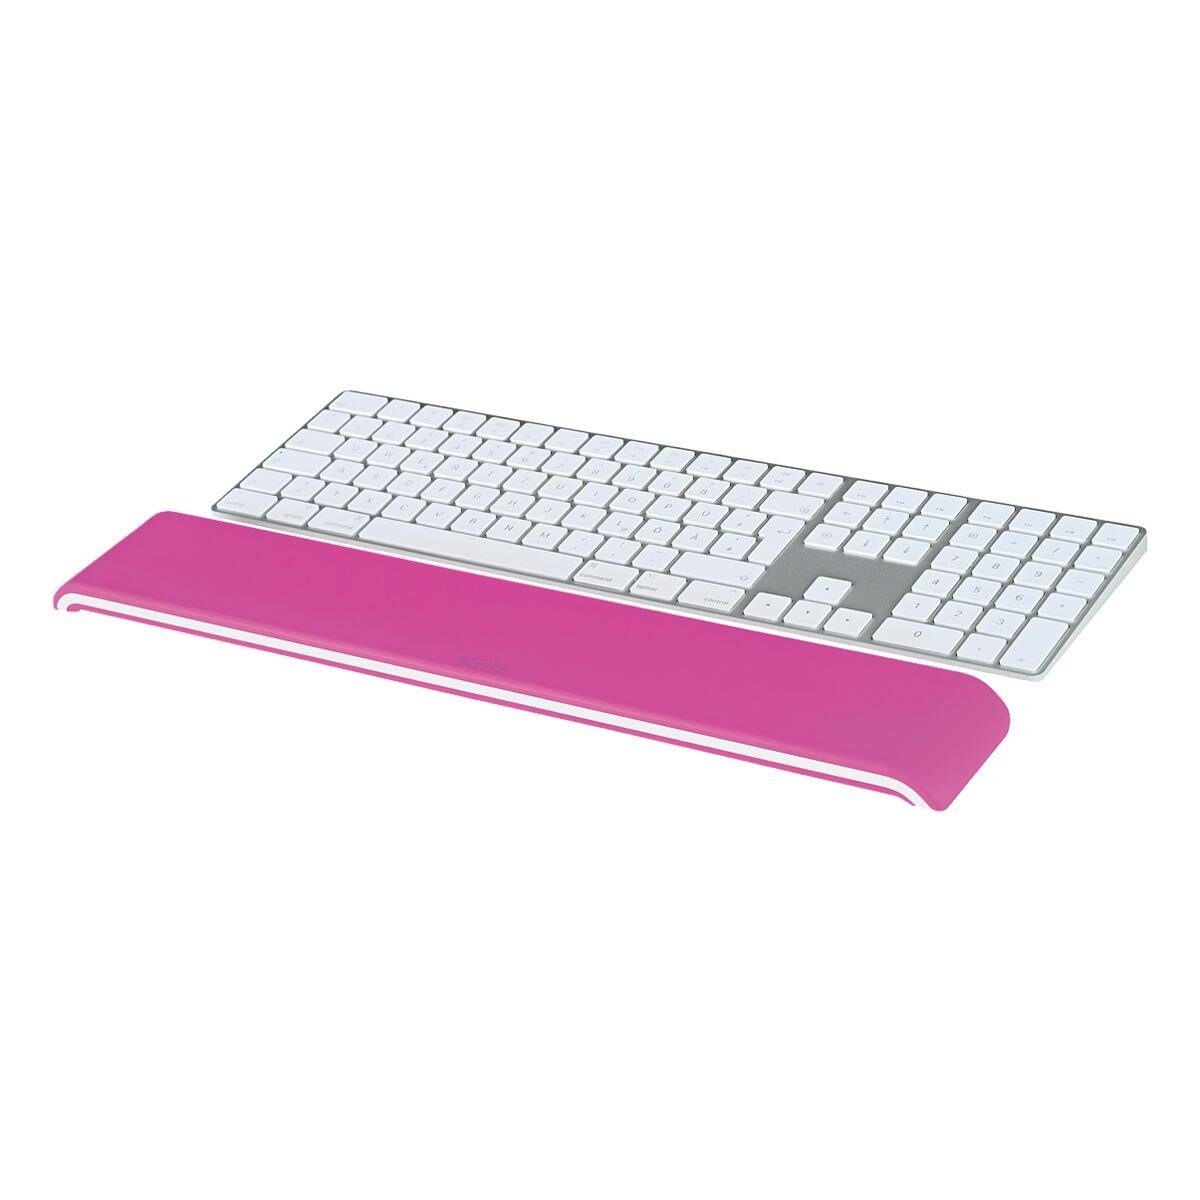 Schaumstofffüllung Ergo LEITZ mit Tastatur-Handballenauflage pink WOW,